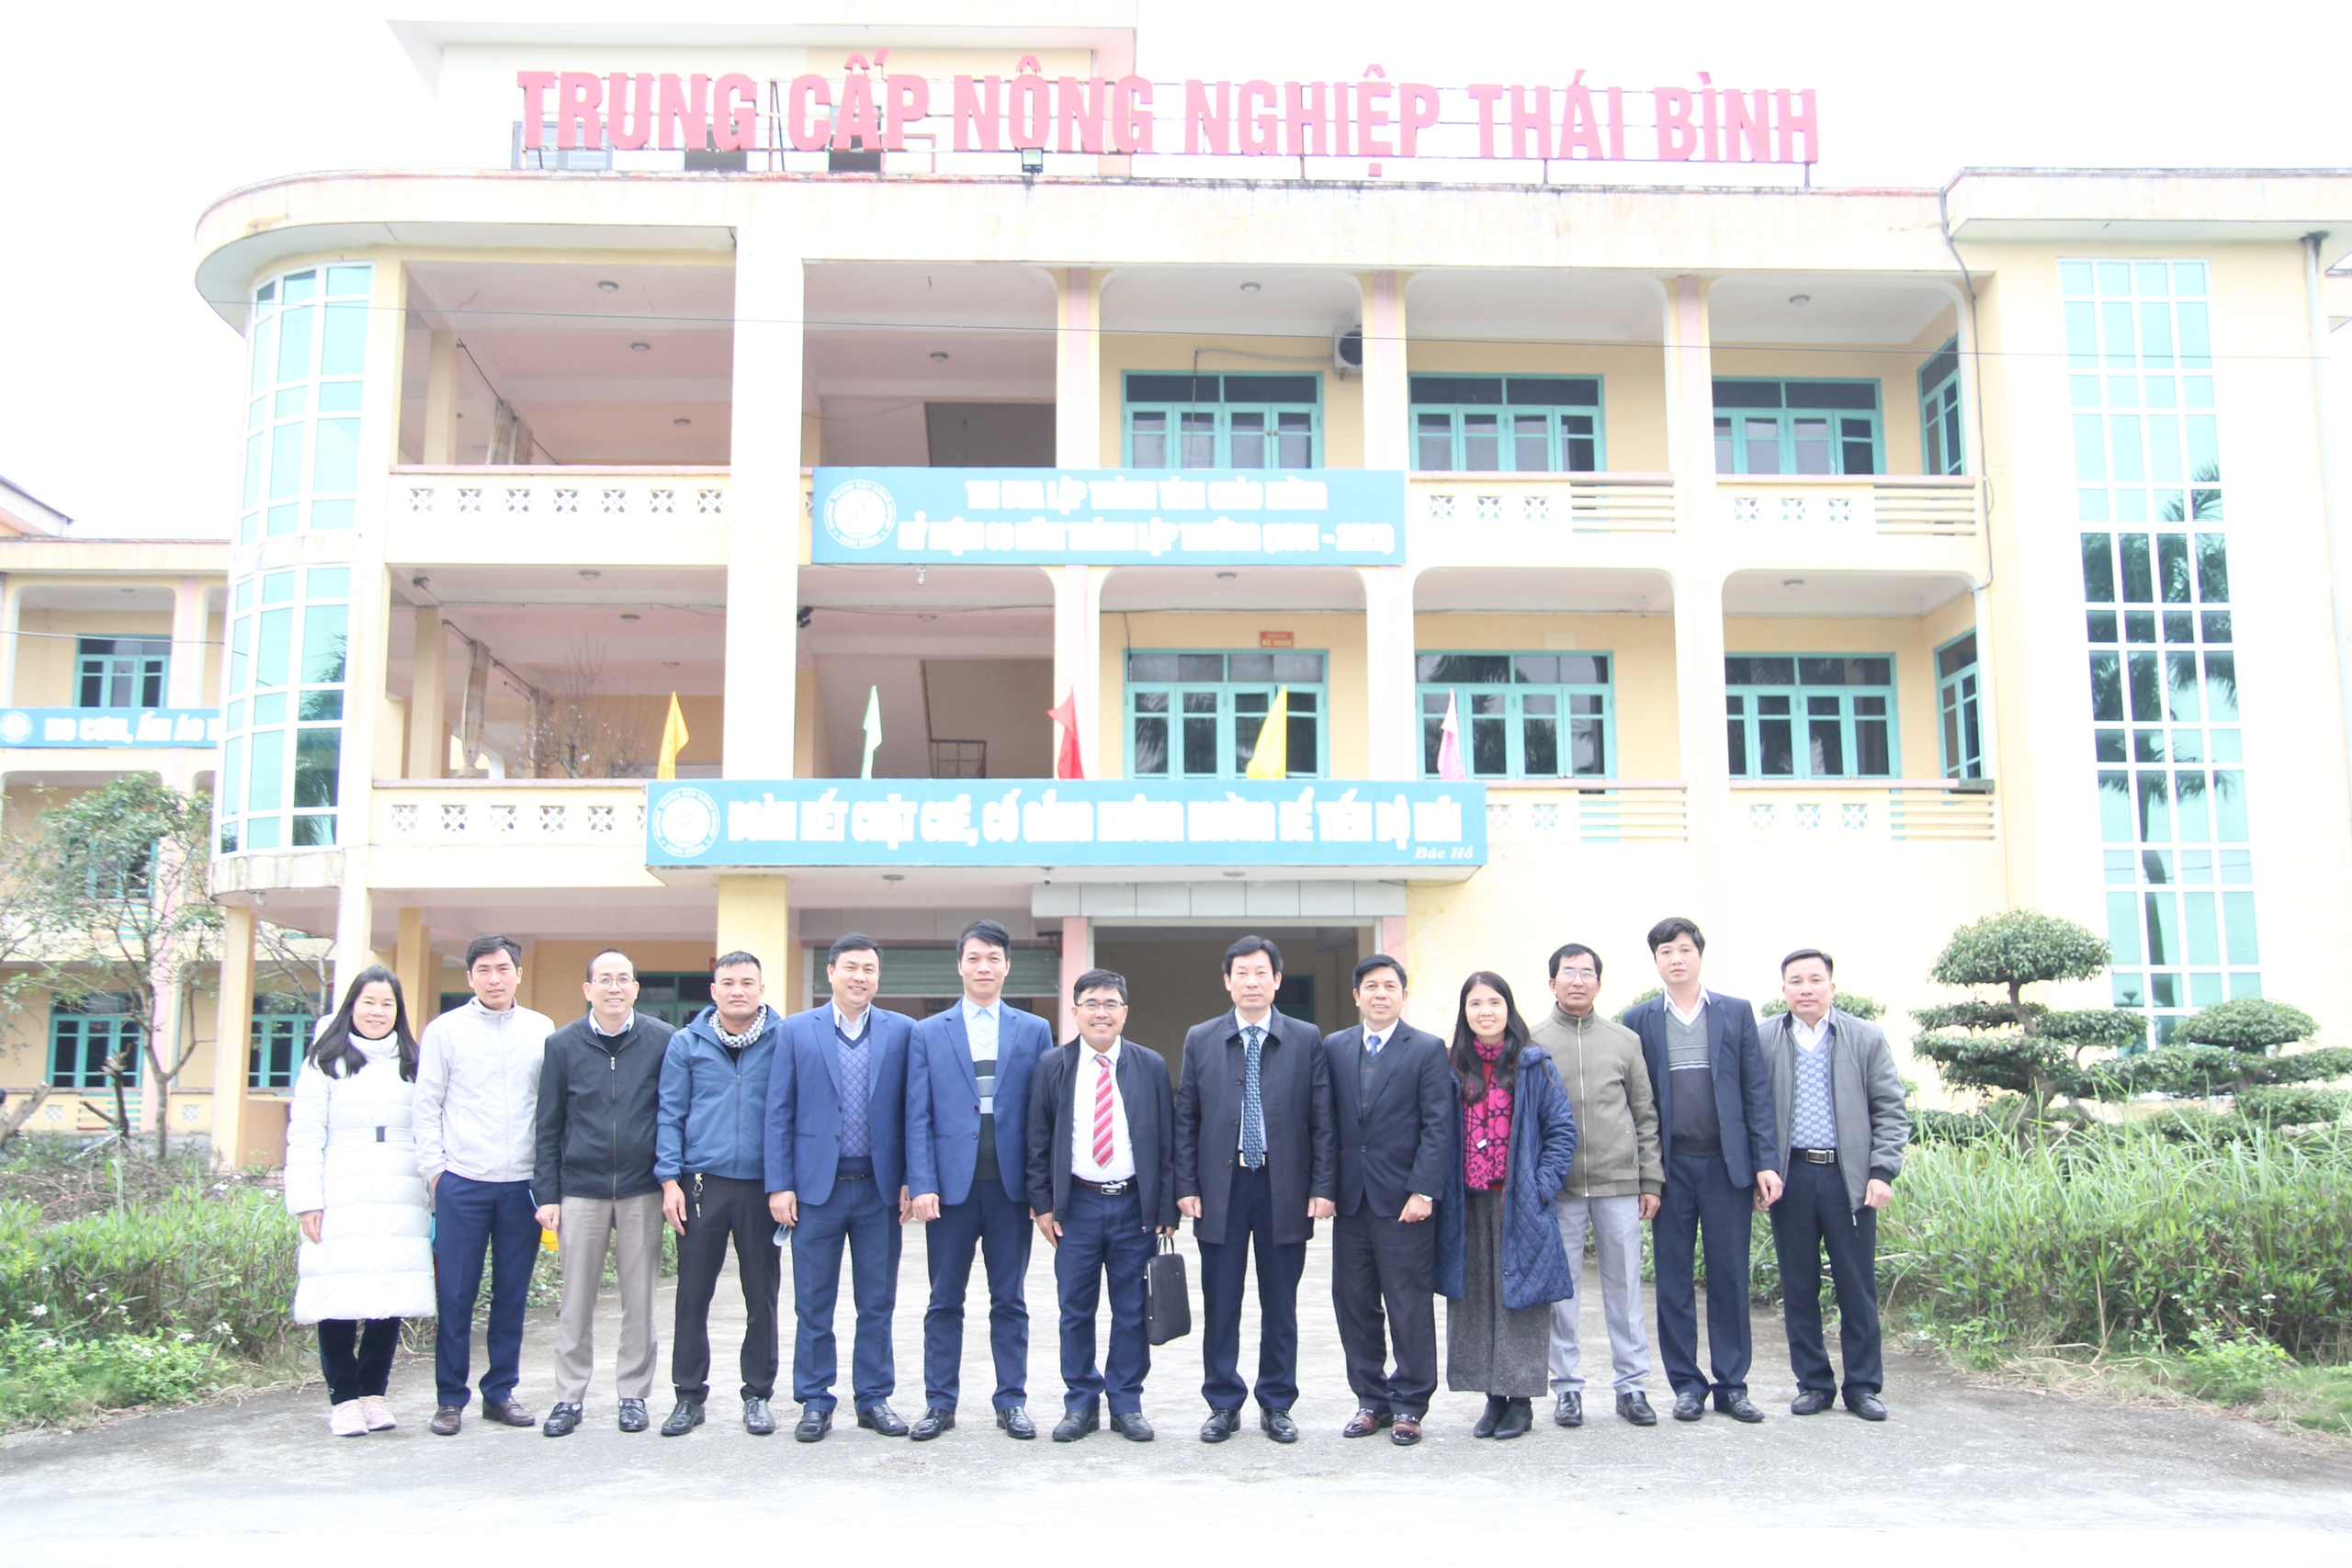 Phó Chủ tịch TƯ Hội NDVN Nguyễn Xuân Định thăm, làm việc với Trường trung cấp Nông nghiệp Thái Bình- Ảnh 14.